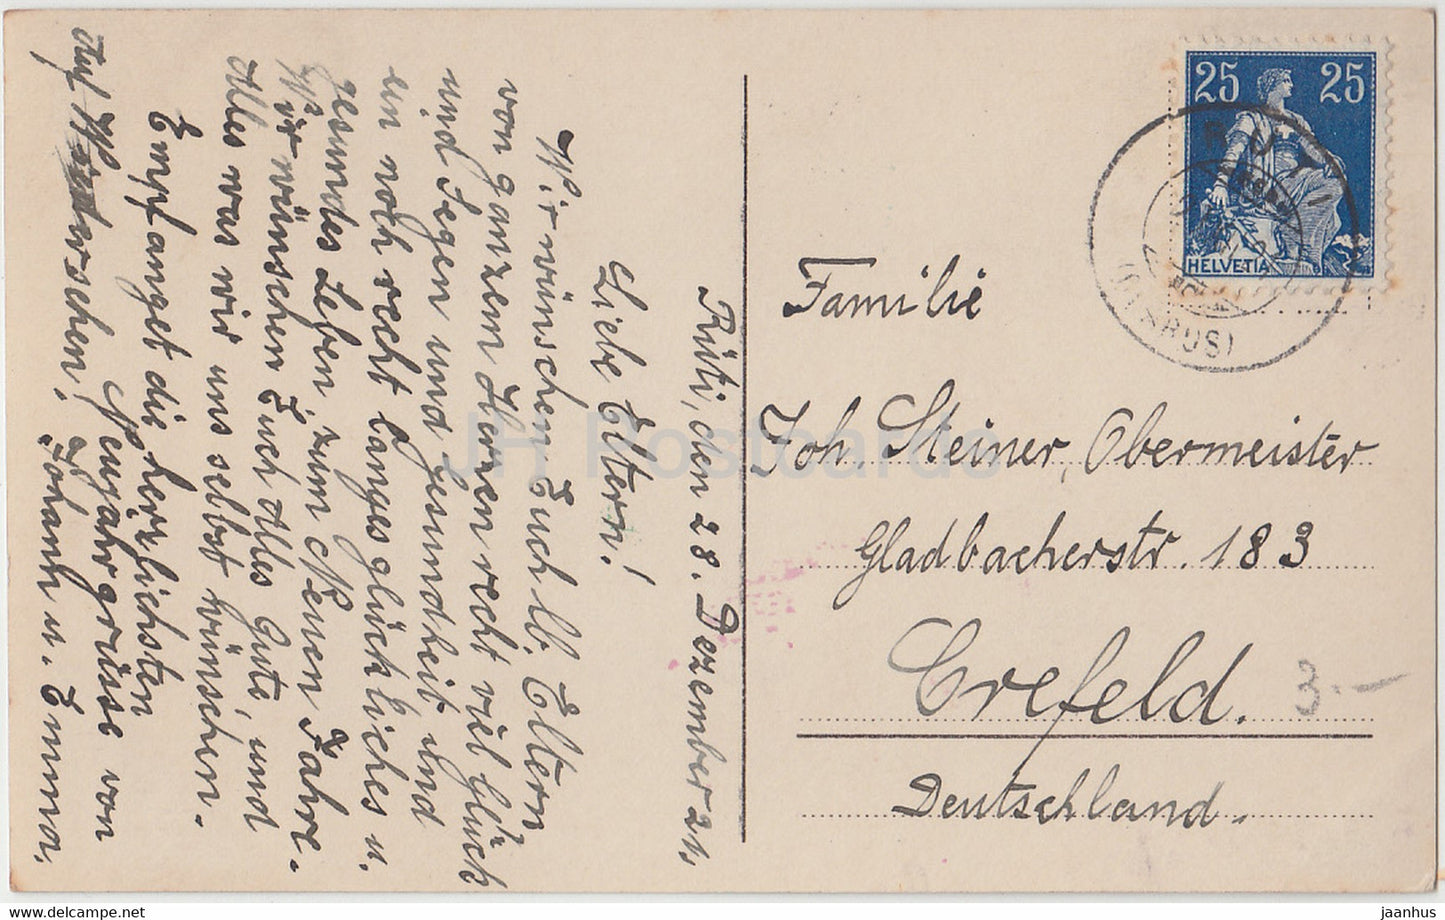 Neujahrsgrußkarte - Herzliche Neujahrsgrusse - Kinder - Amag - alte Postkarte - 1921 - Deutschland - gebraucht